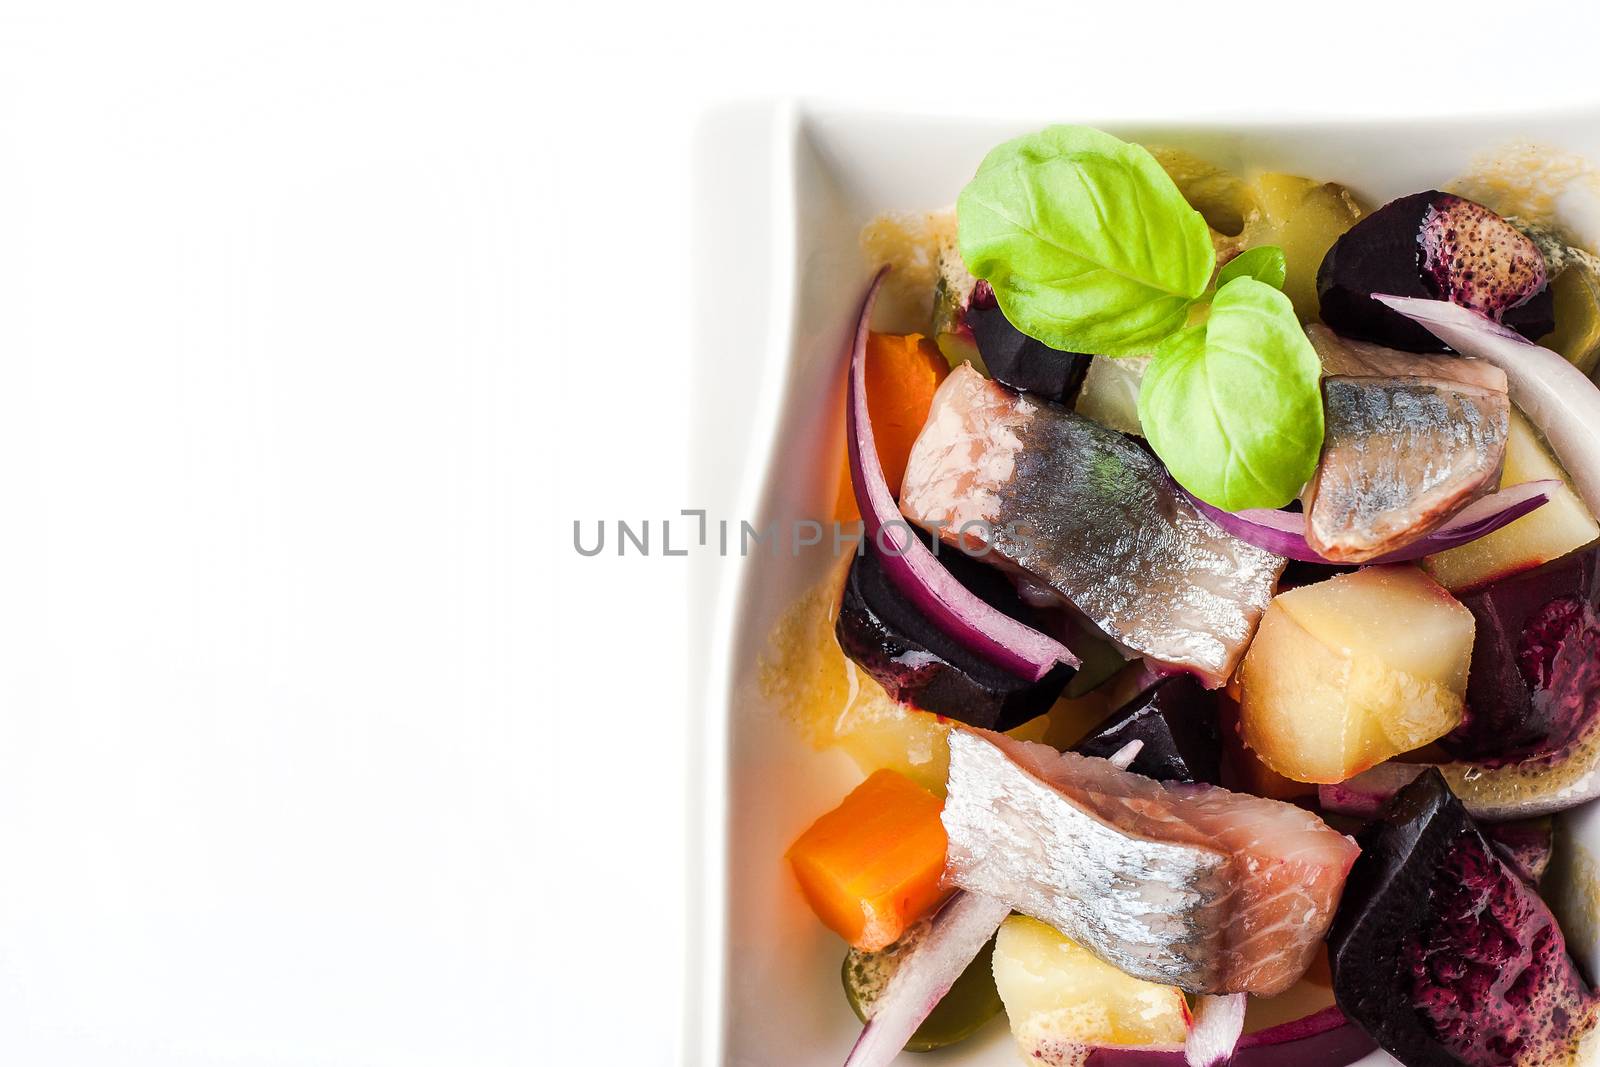 Vegetable salad with herring by Deniskarpenkov